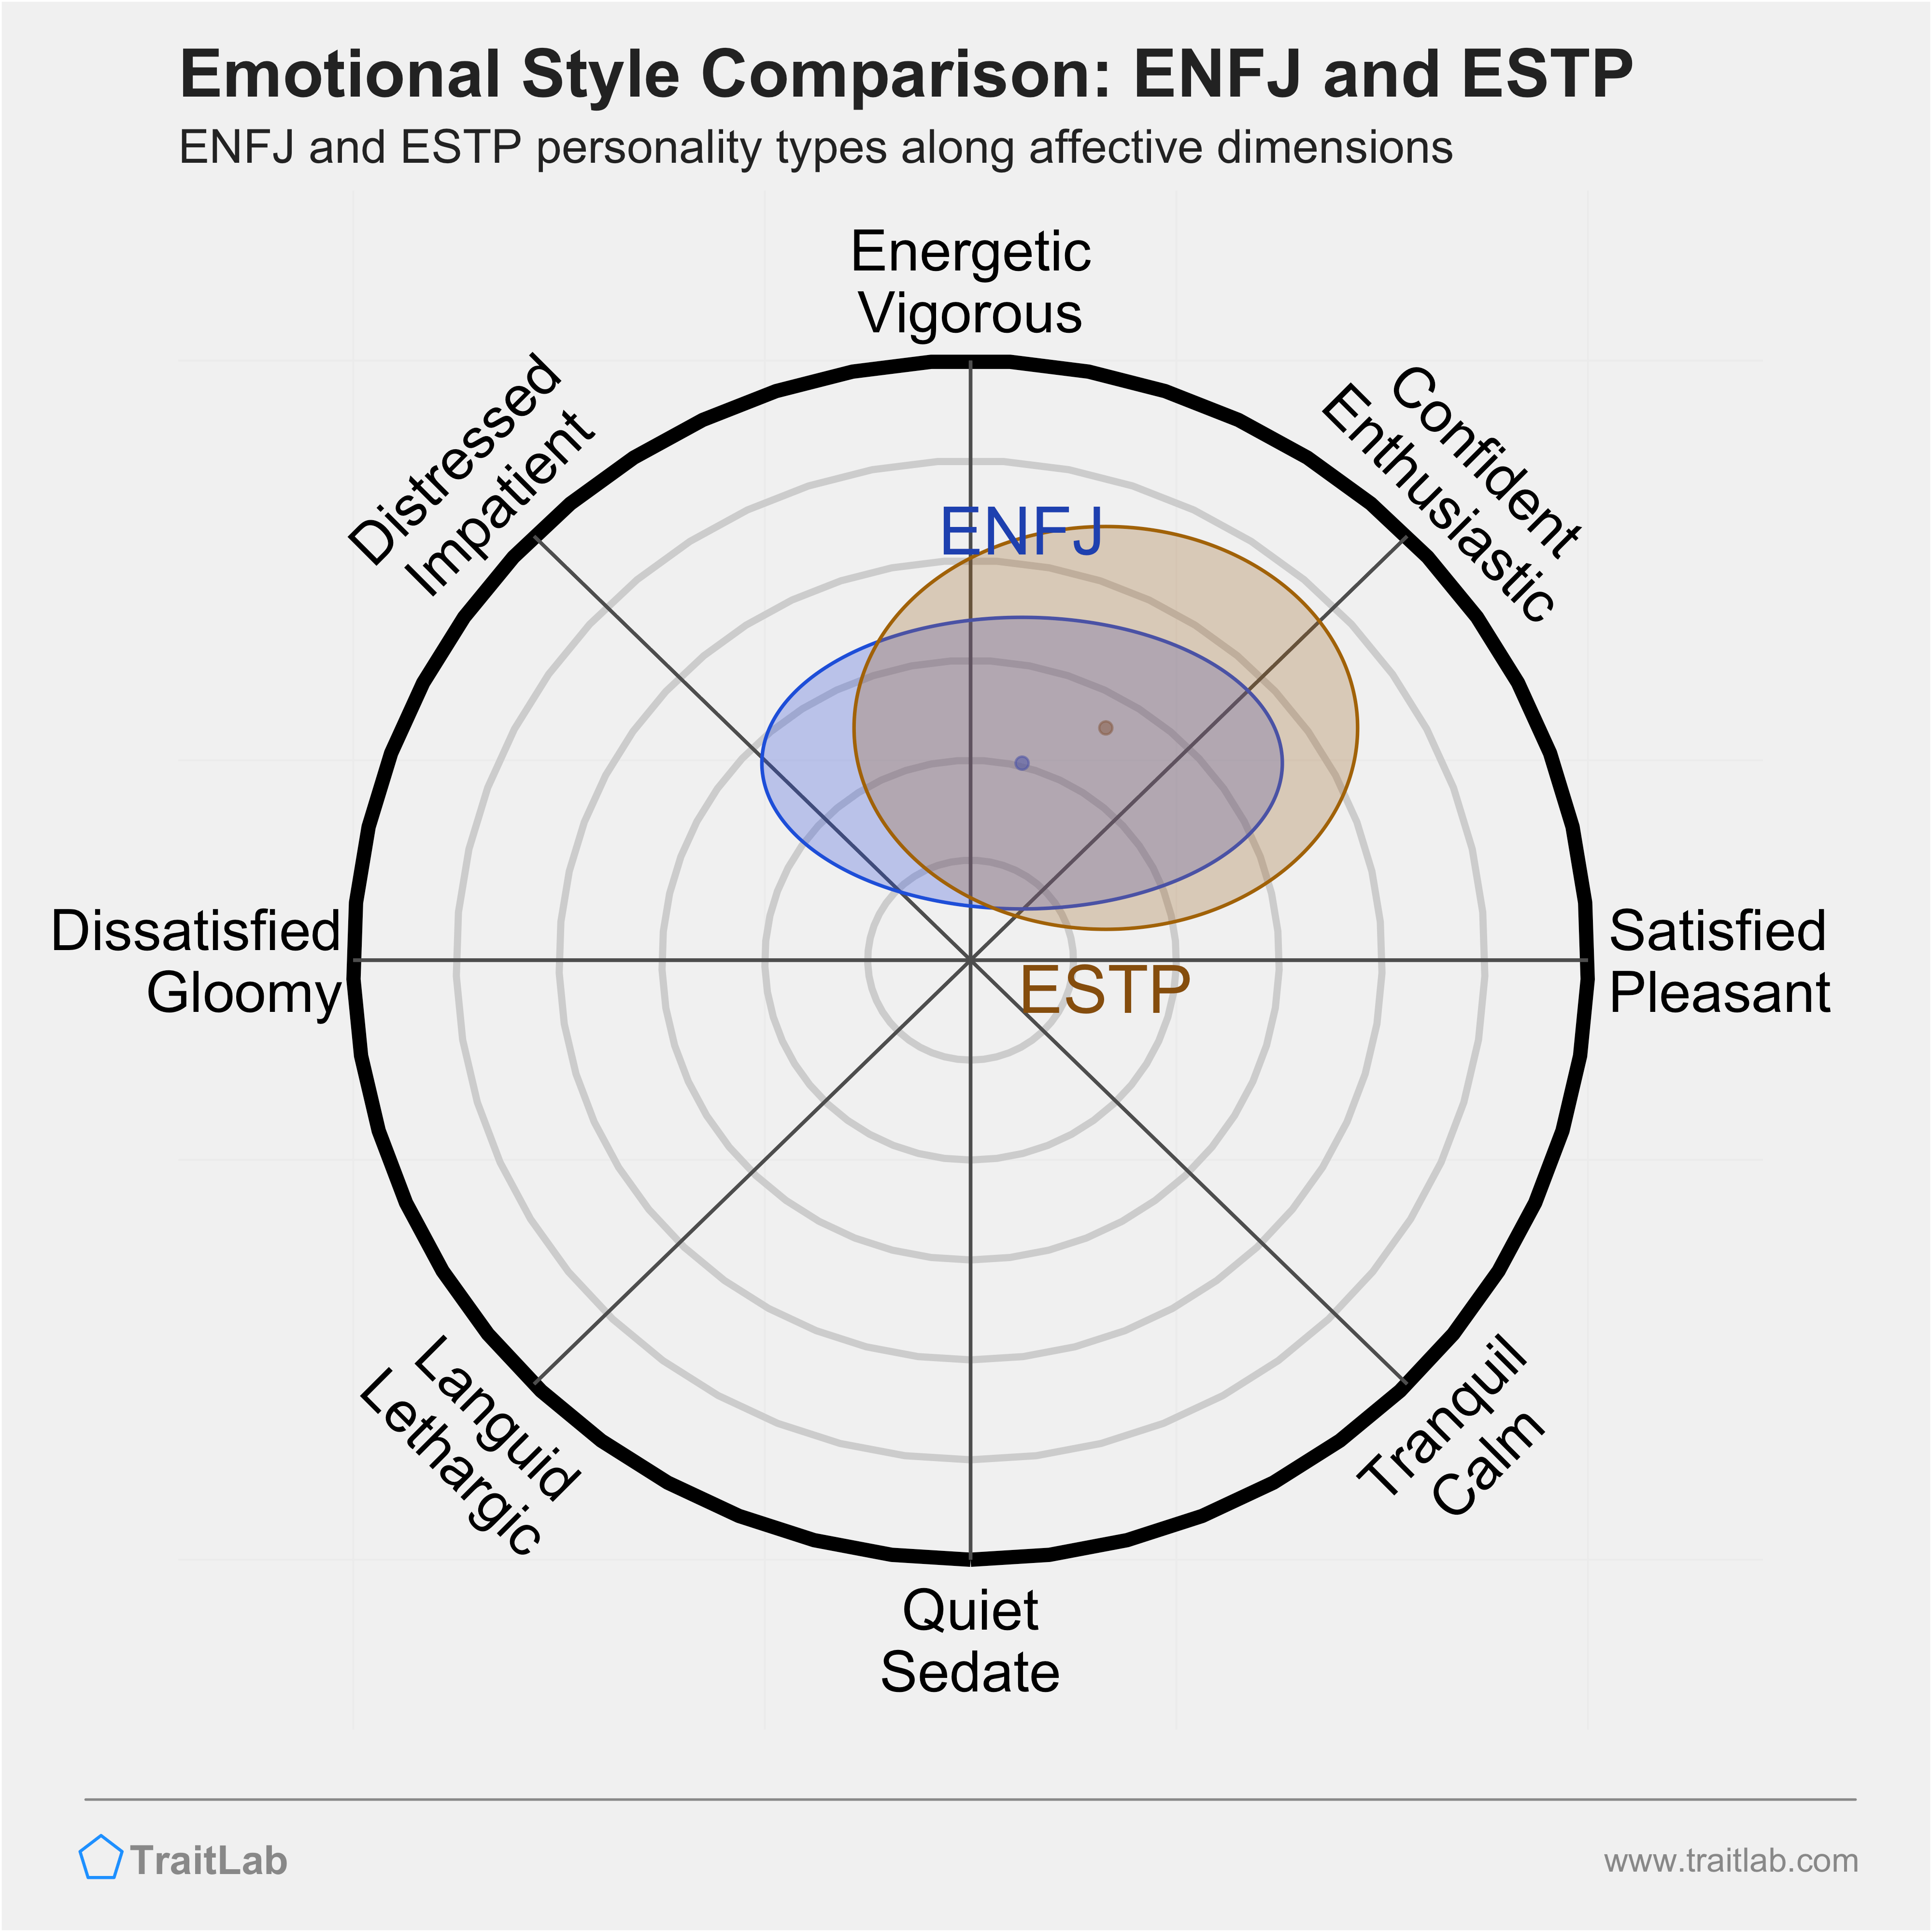 ENFJ and ESTP comparison across emotional (affective) dimensions